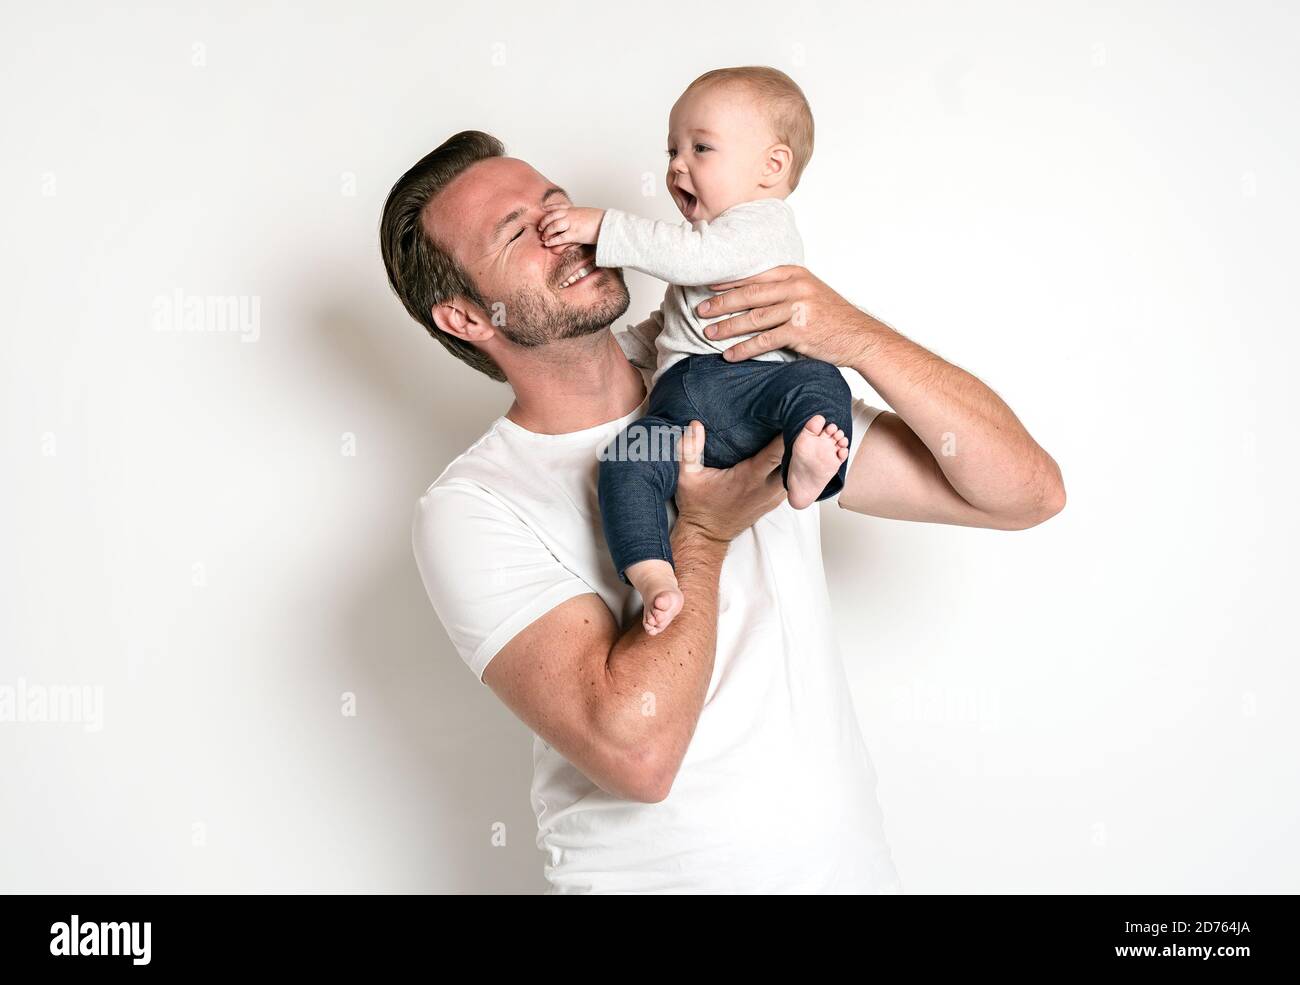 Mann hält ein lächelndes 6 Monate altes Baby, isoliert auf weiß. Das Baby hält die Nase des Vaters. Ziemlich komische Situation Stockfoto